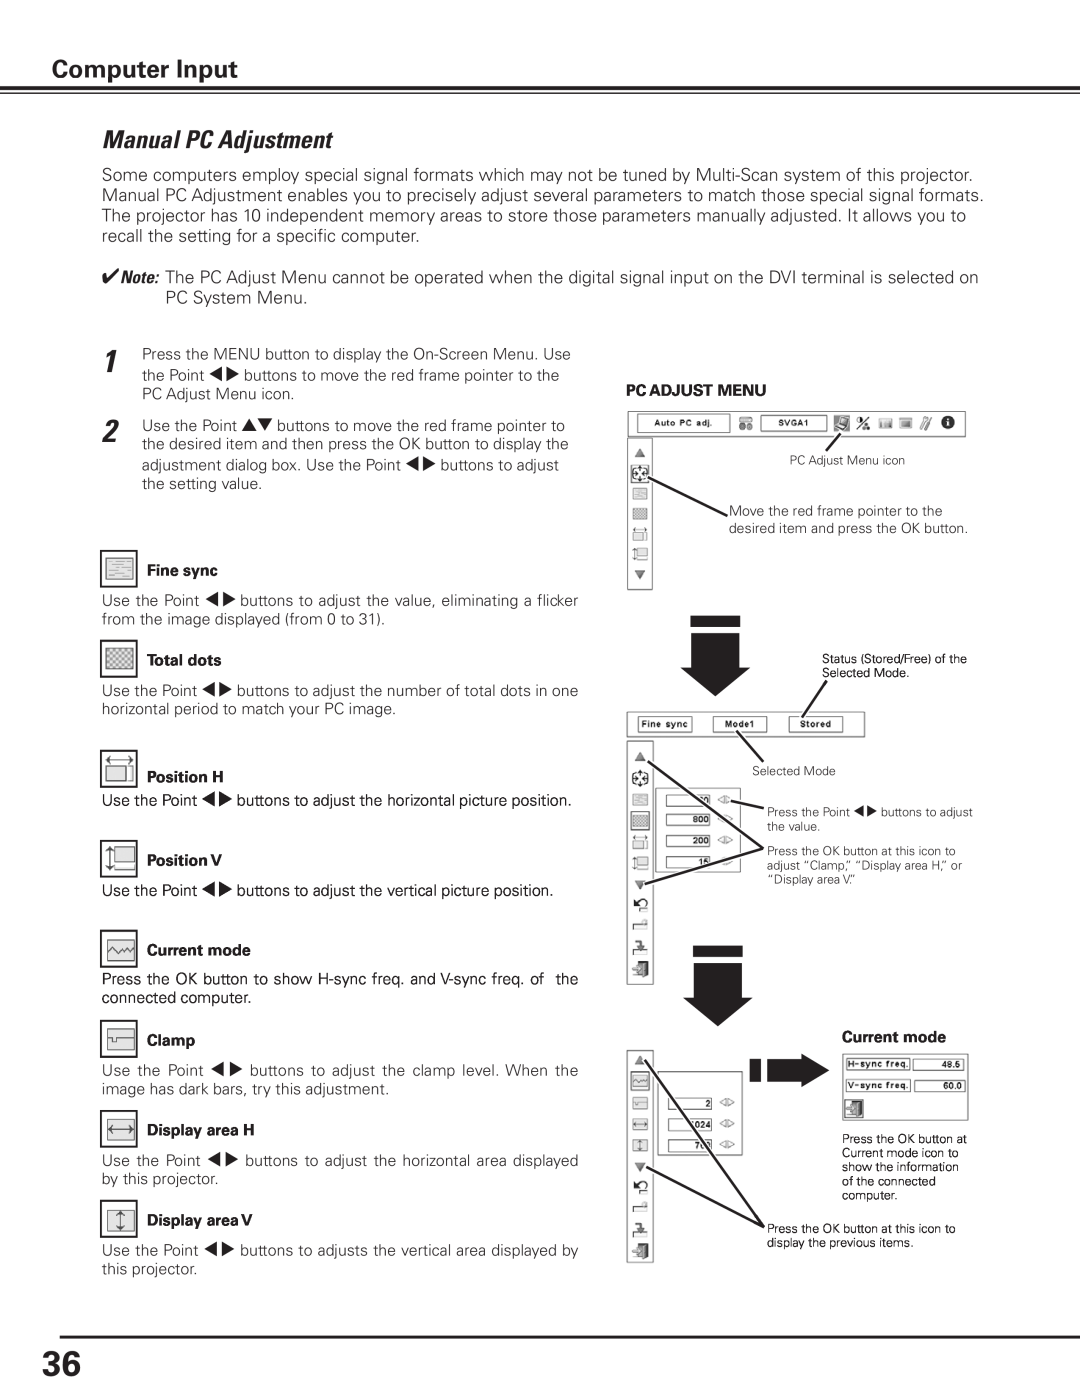 Canon 7585 manual Manual PC Adjustment, Computer Input 